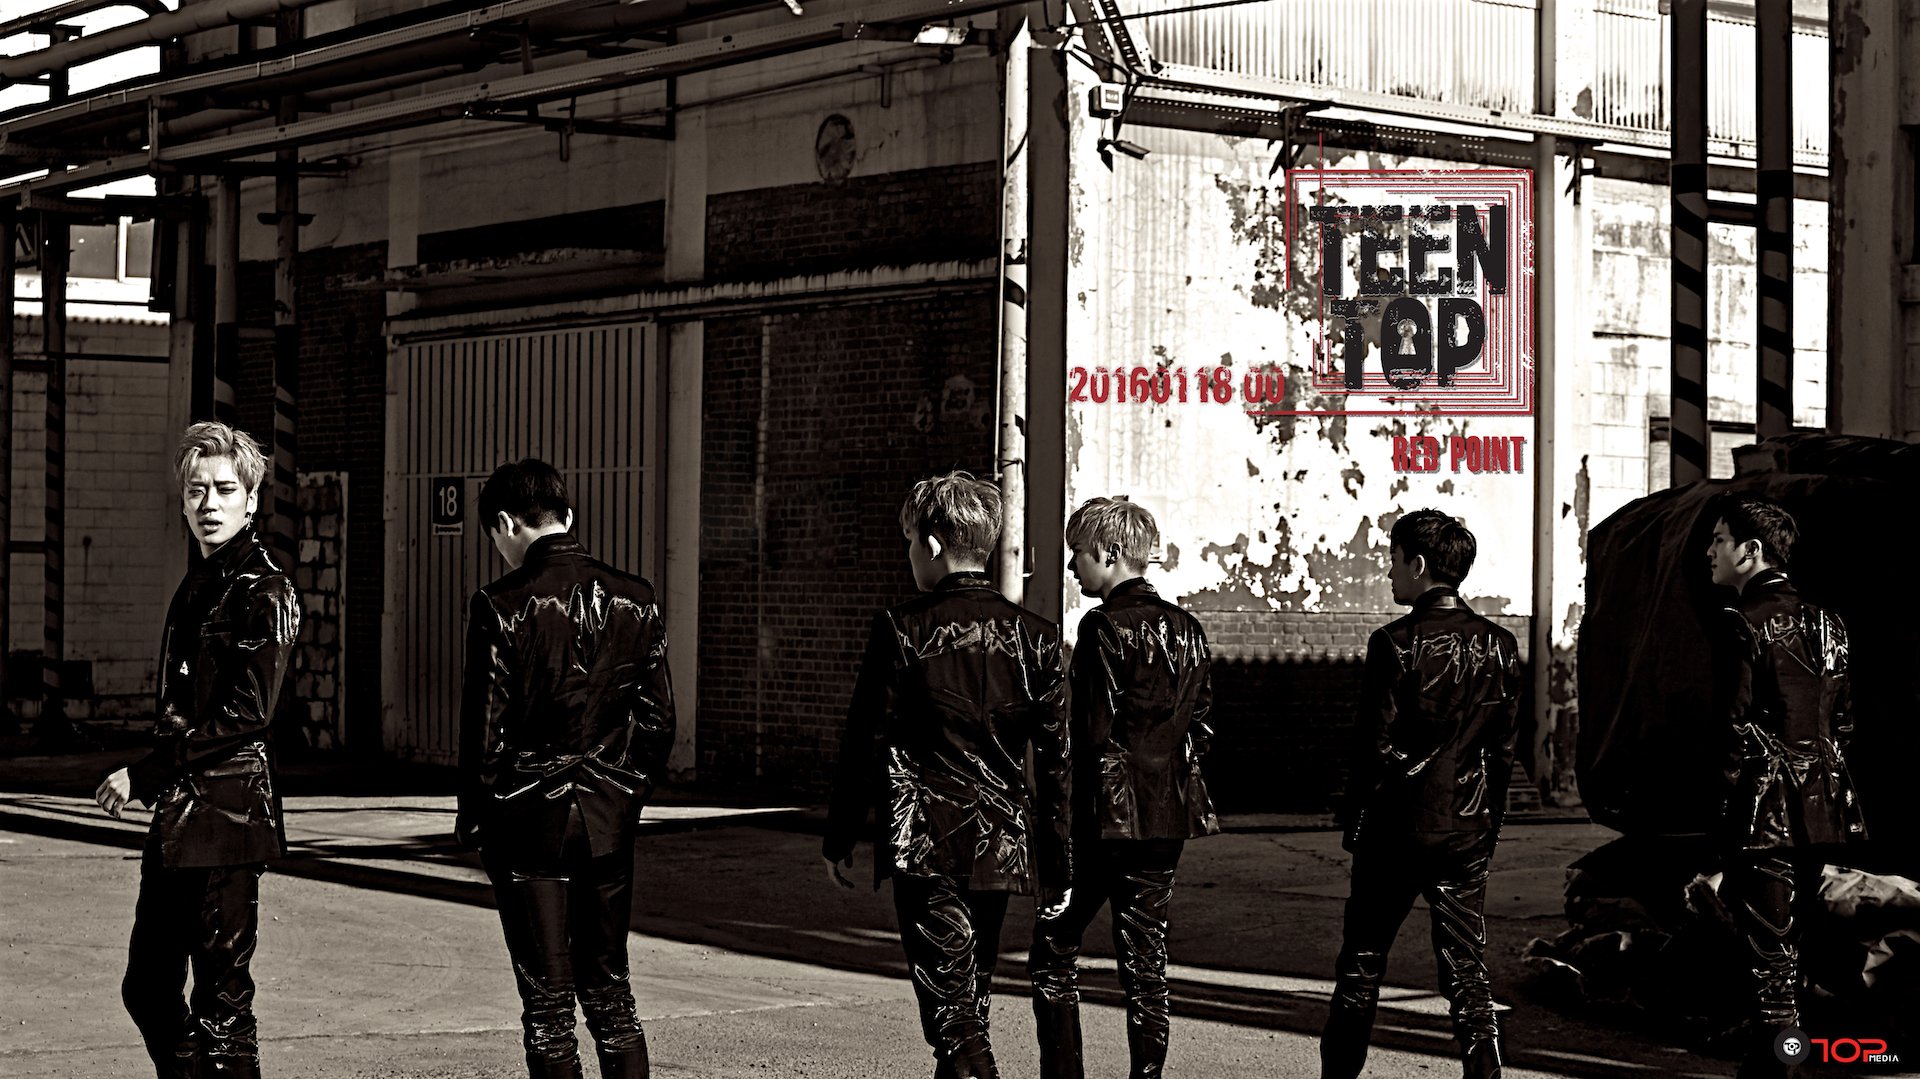 18일(월), 틴탑(TEEN TOP) 새 앨범 'RED POINT' 발매 예정 | 인스티즈